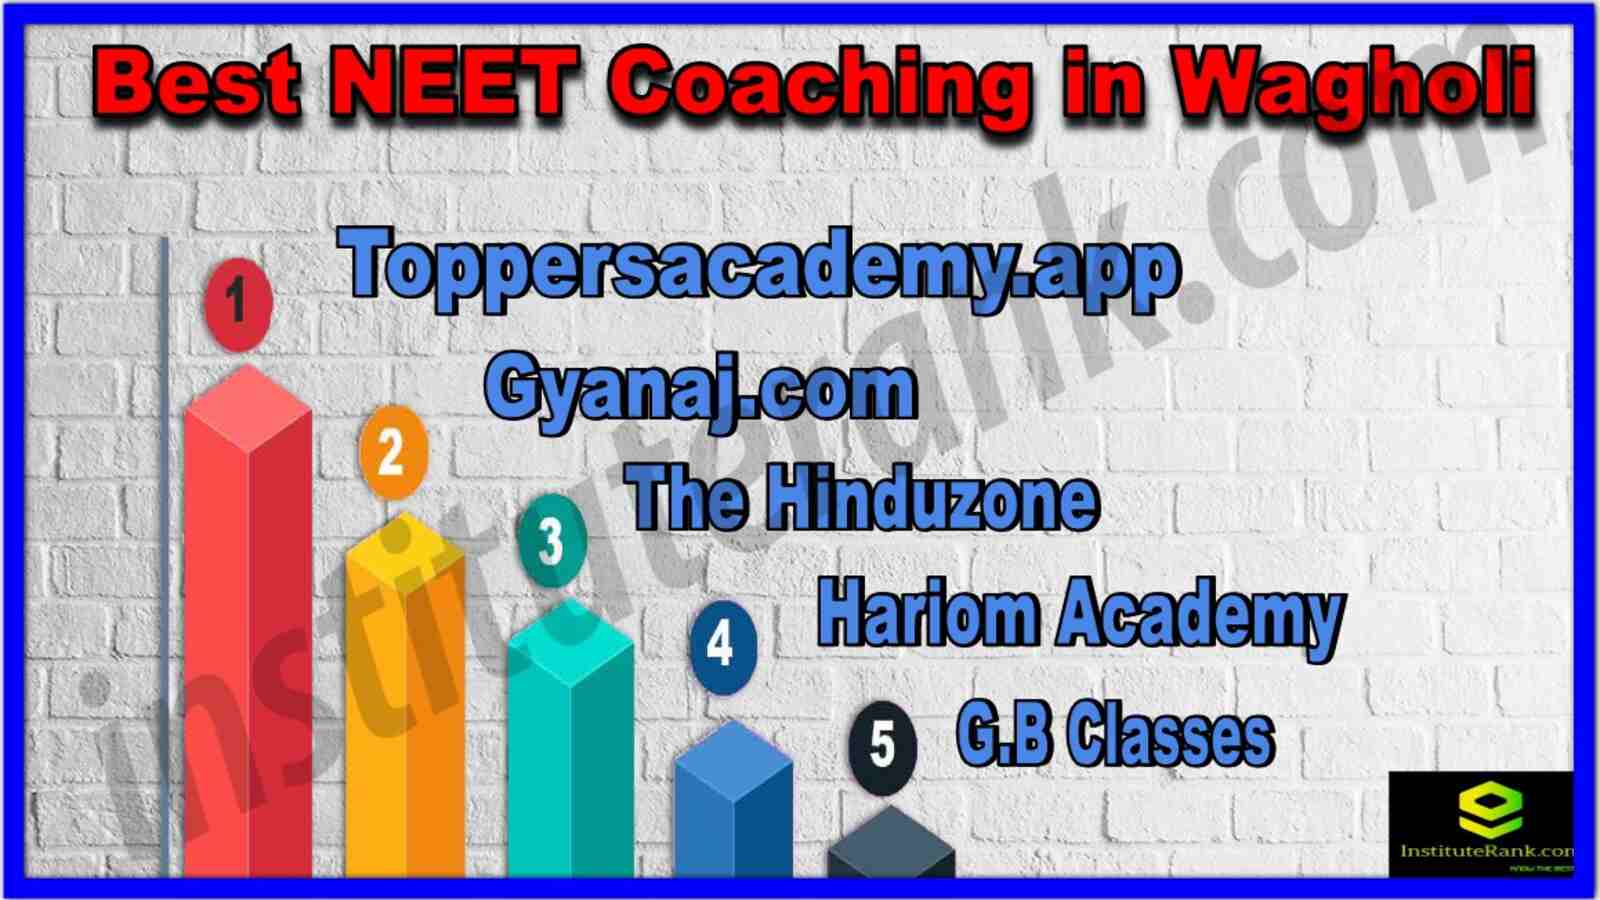 Best NEET Coaching in Wagholi